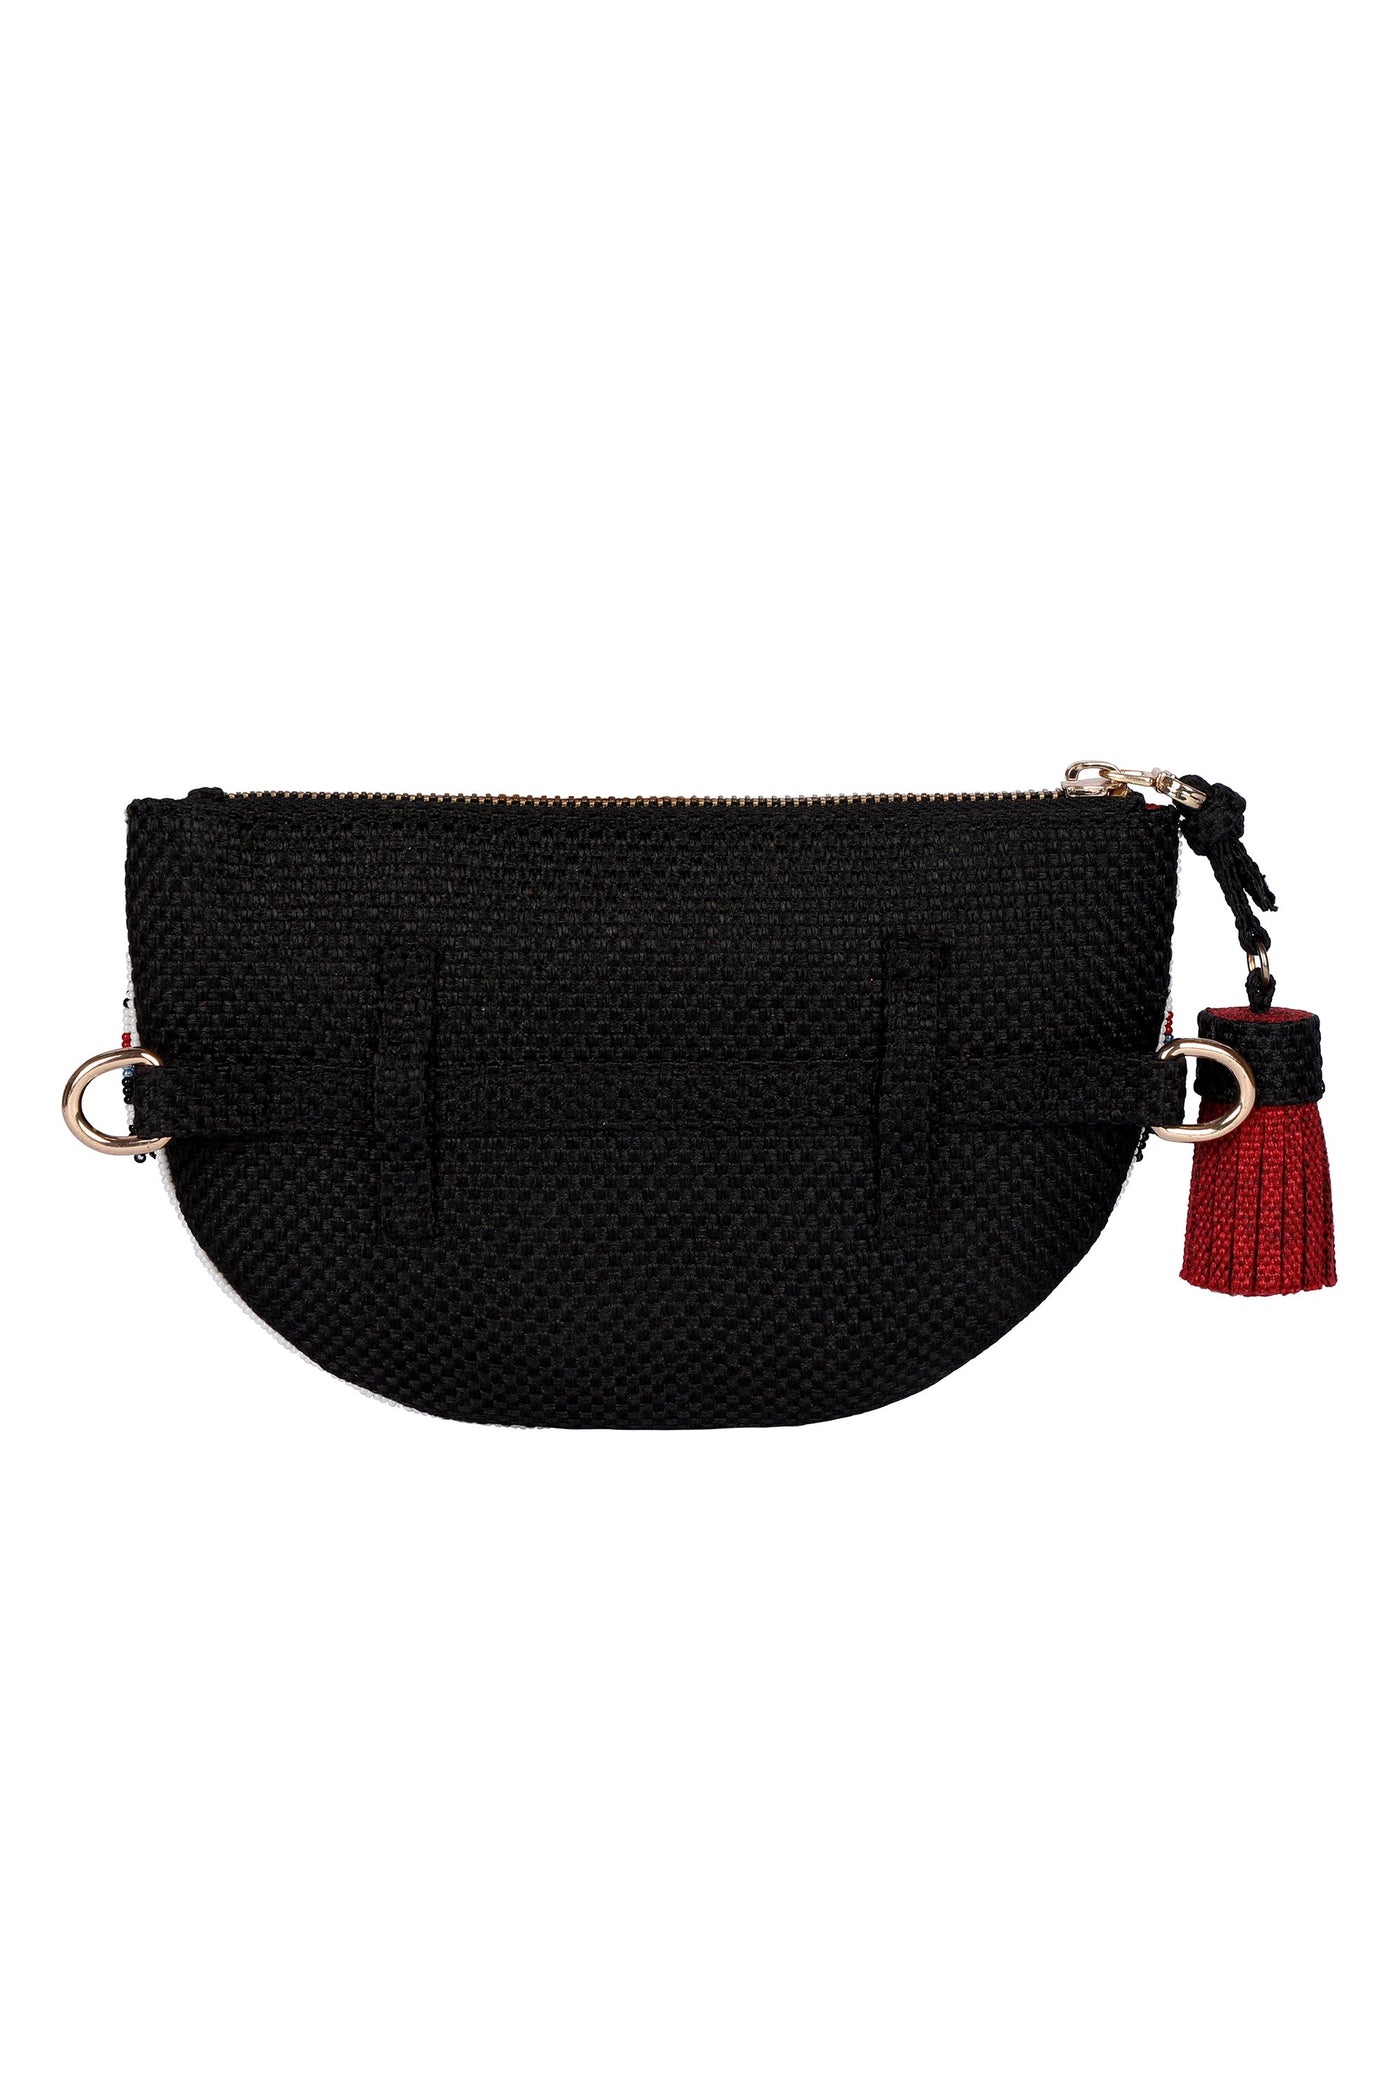 Fringe Benefits Belt Bag